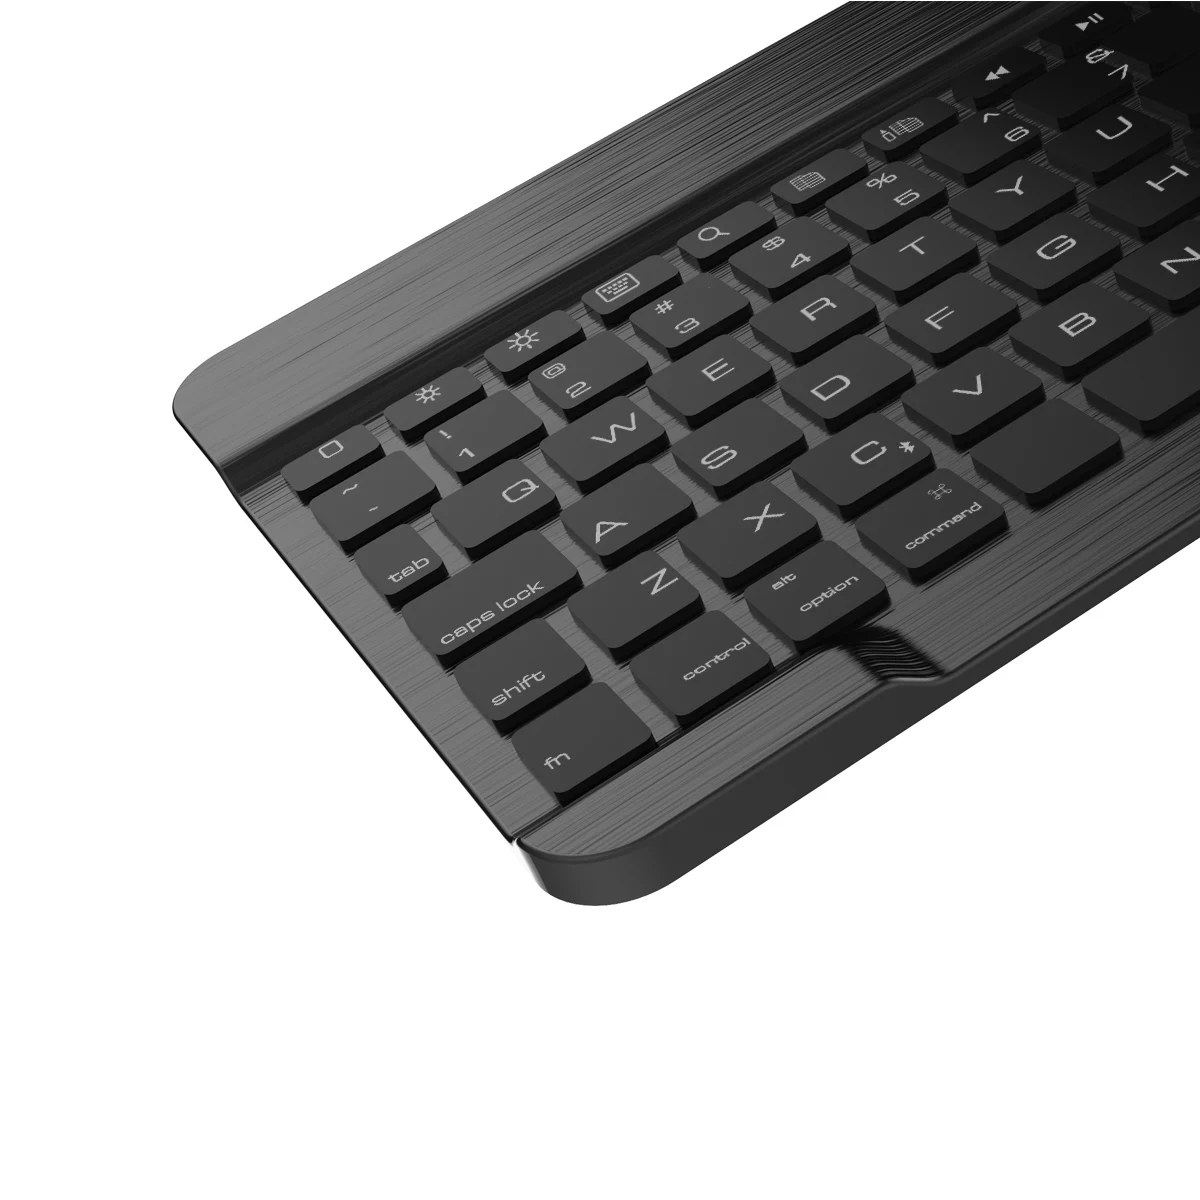 Для iPad 9,7 чехол умный беспроводной Bluetooth Подсветка США клавиатура Флип из искусственной кожи чехол для iPad 9,7 дюймов с клавиатурой